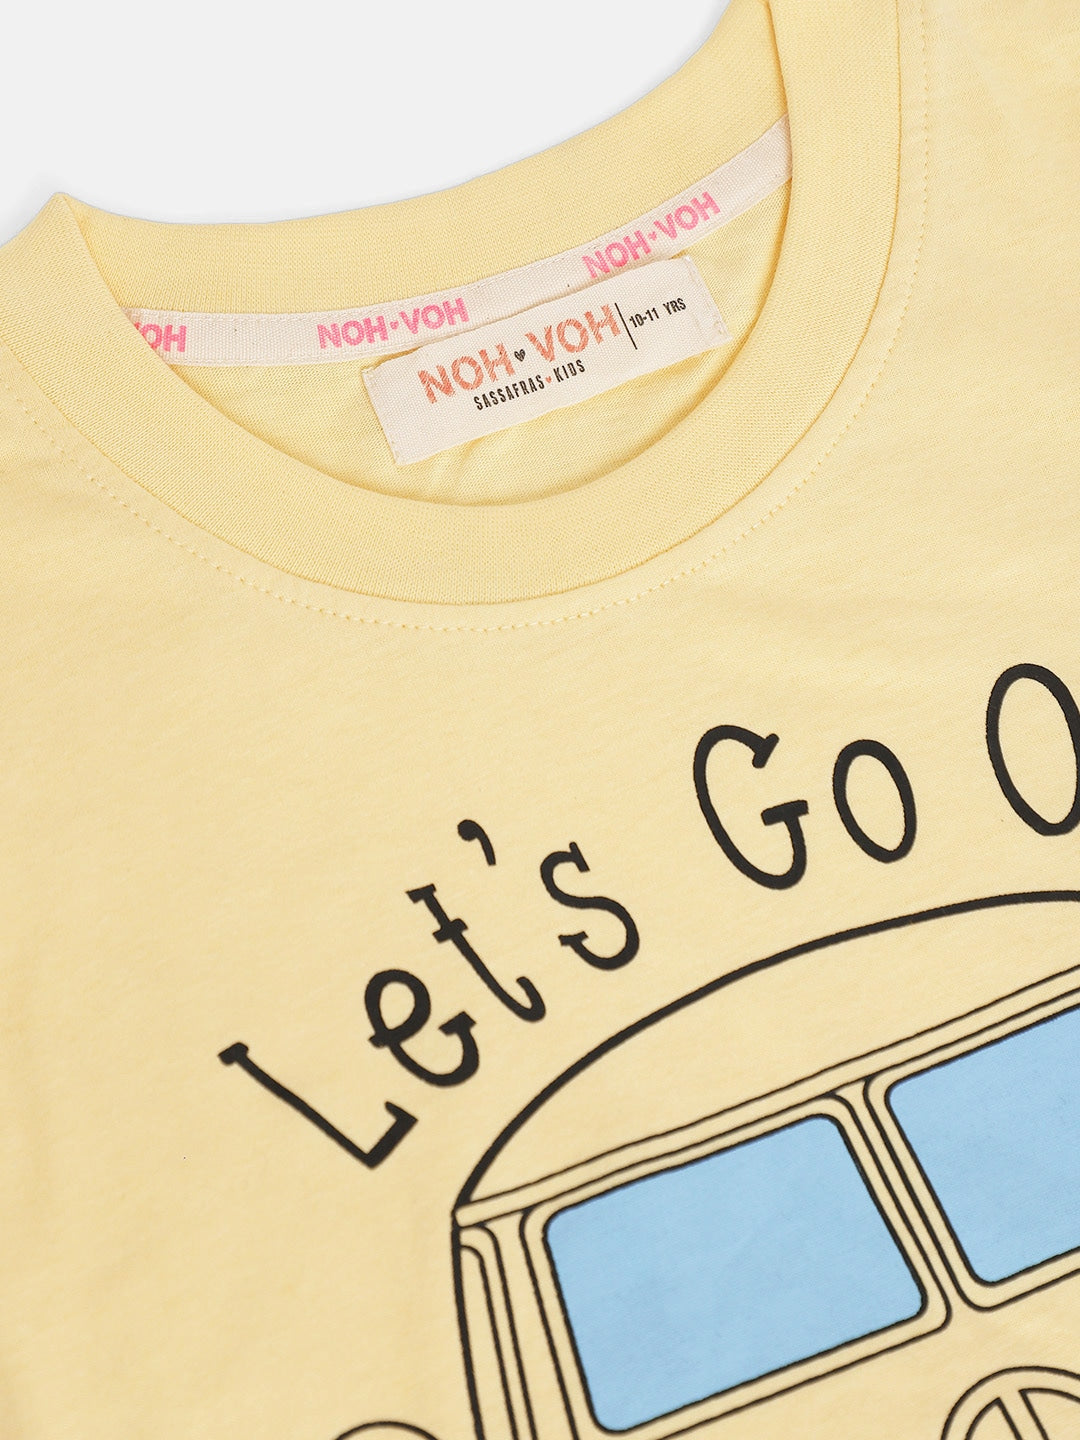 Girls Yellow Adventure Sleeveless T-Shirt